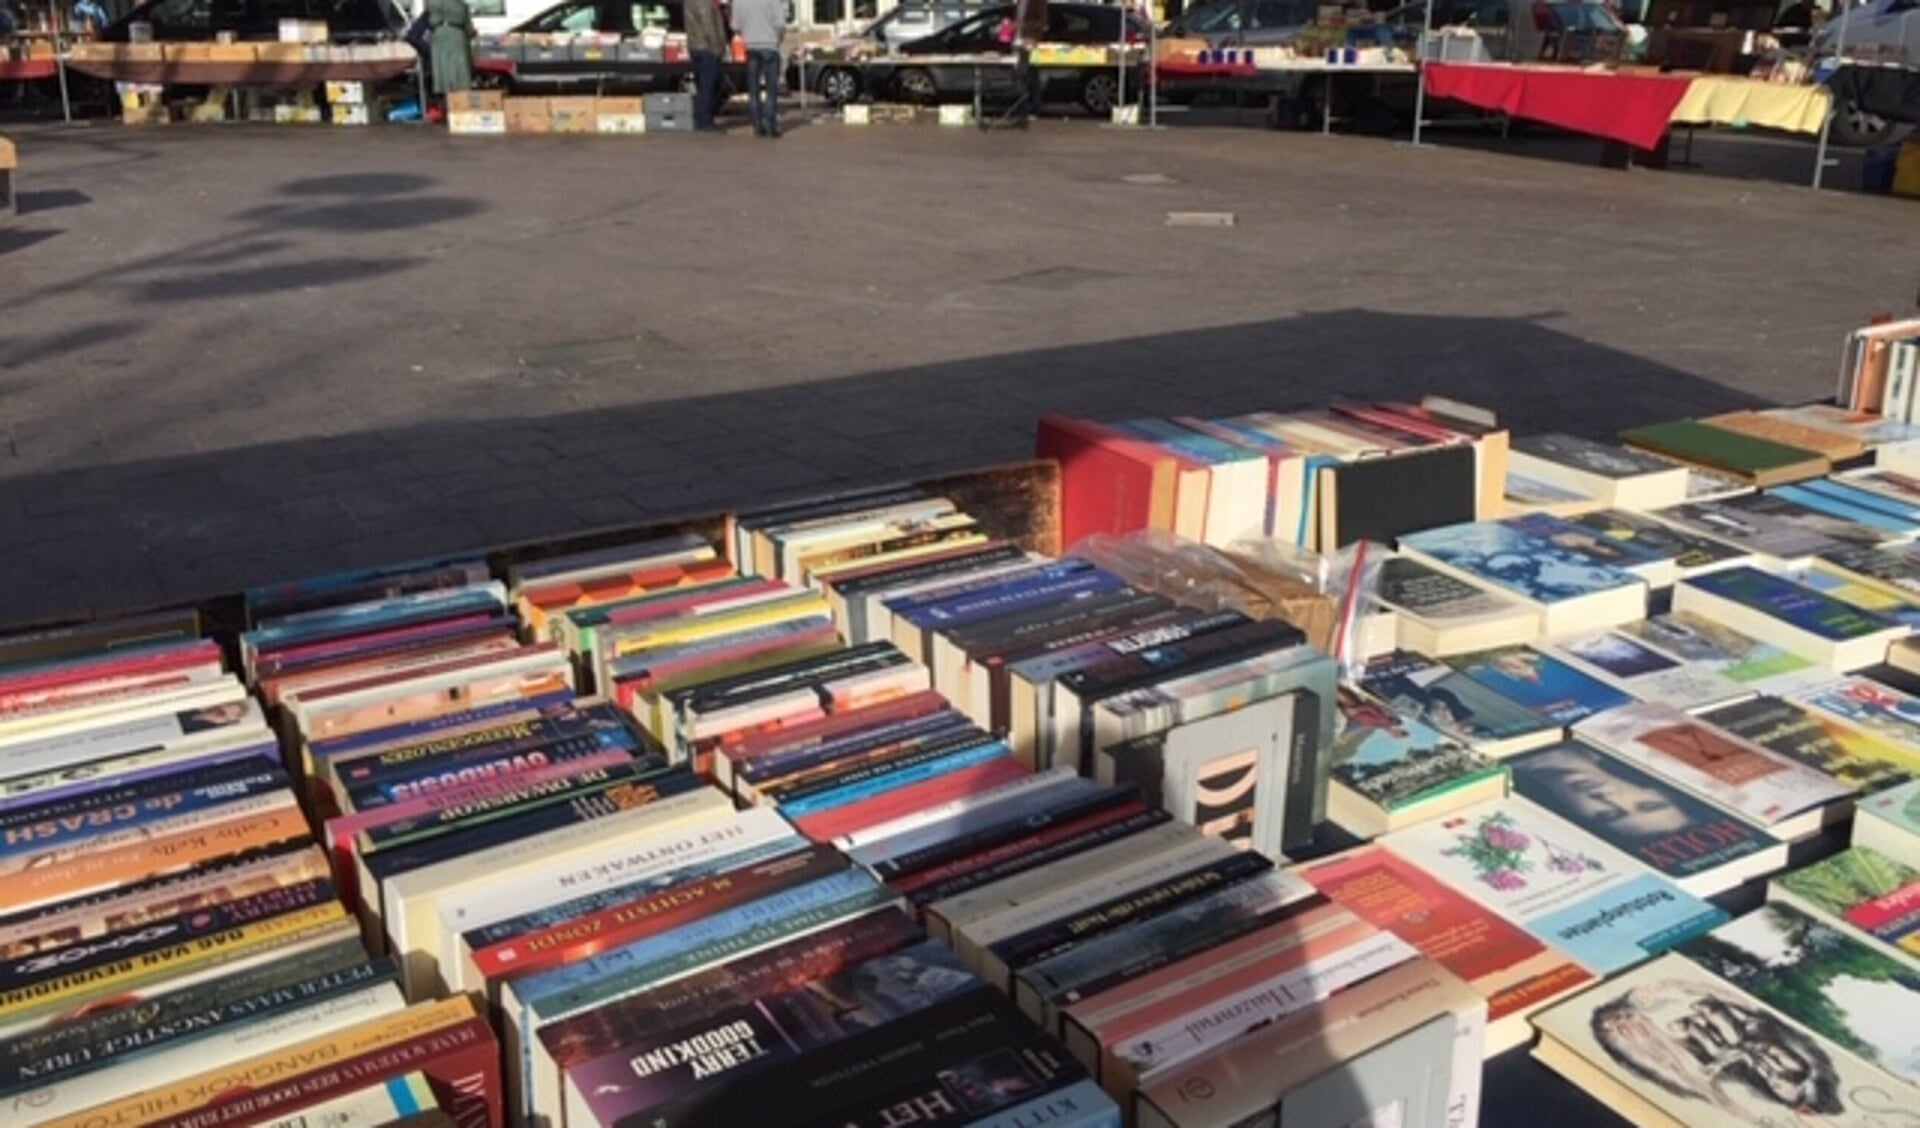 Schiedamse boekenmarkt